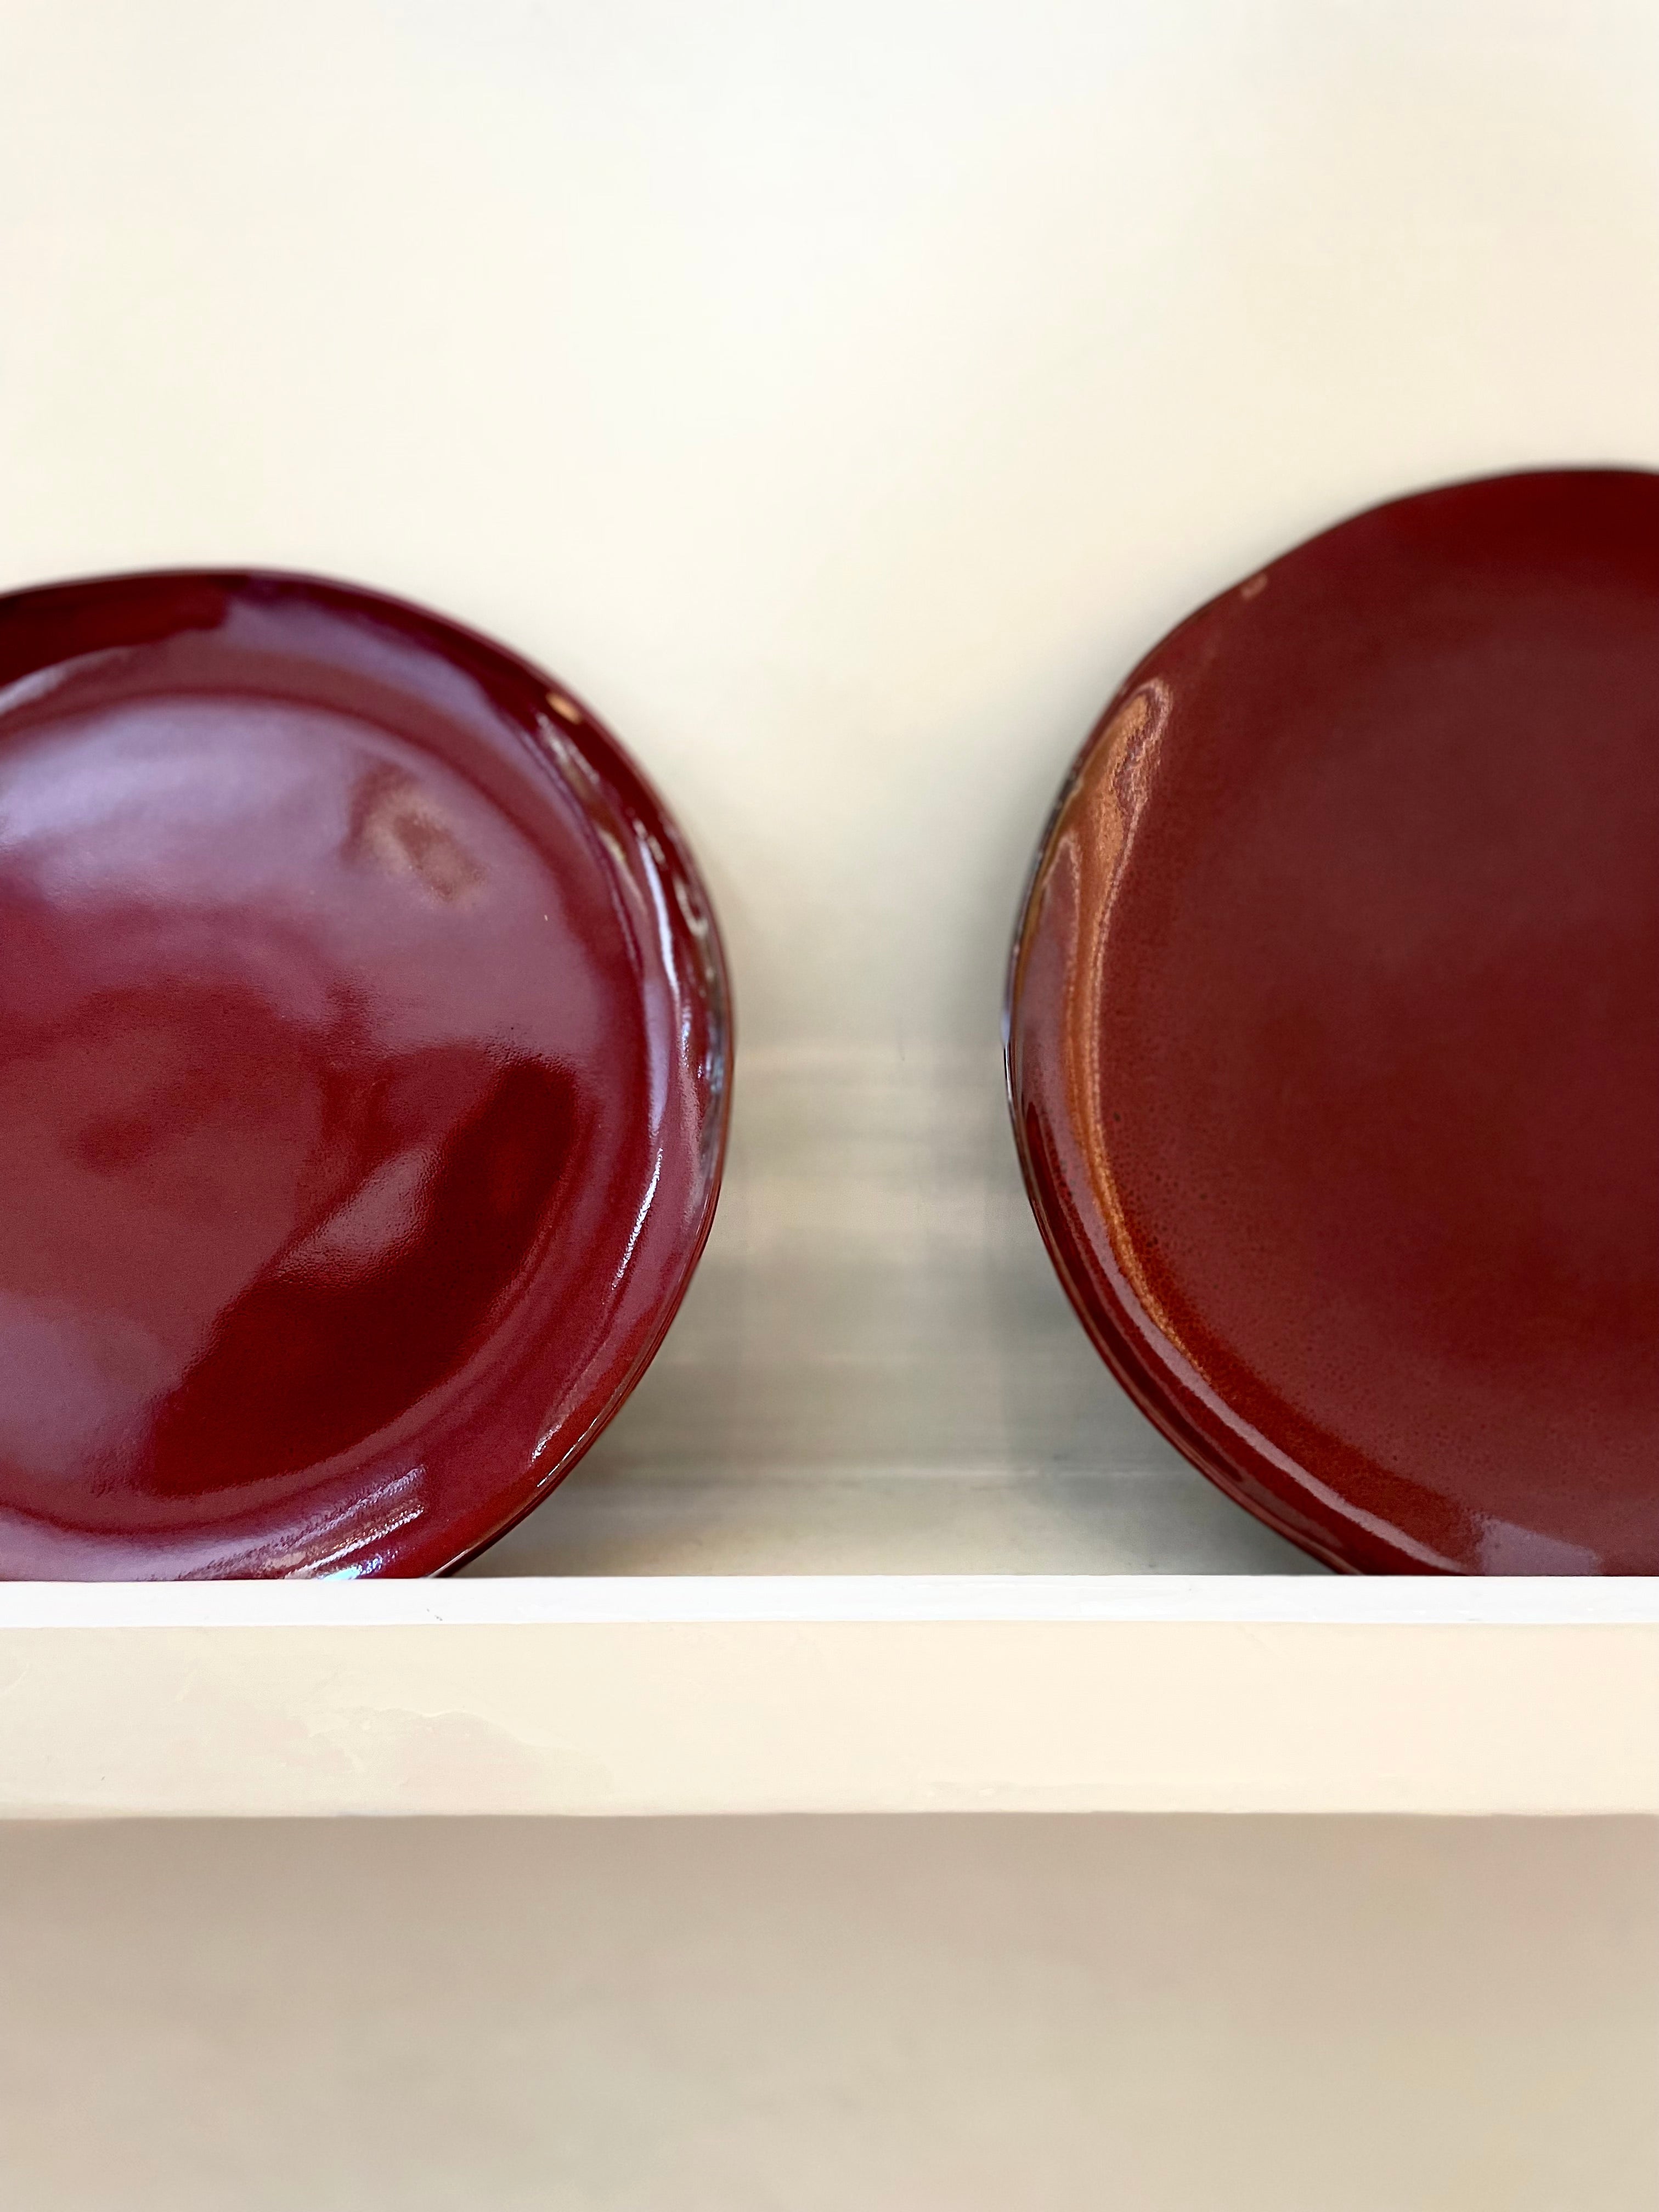 Deep plate S - La Mère by Marie Michielssen - Venetian red